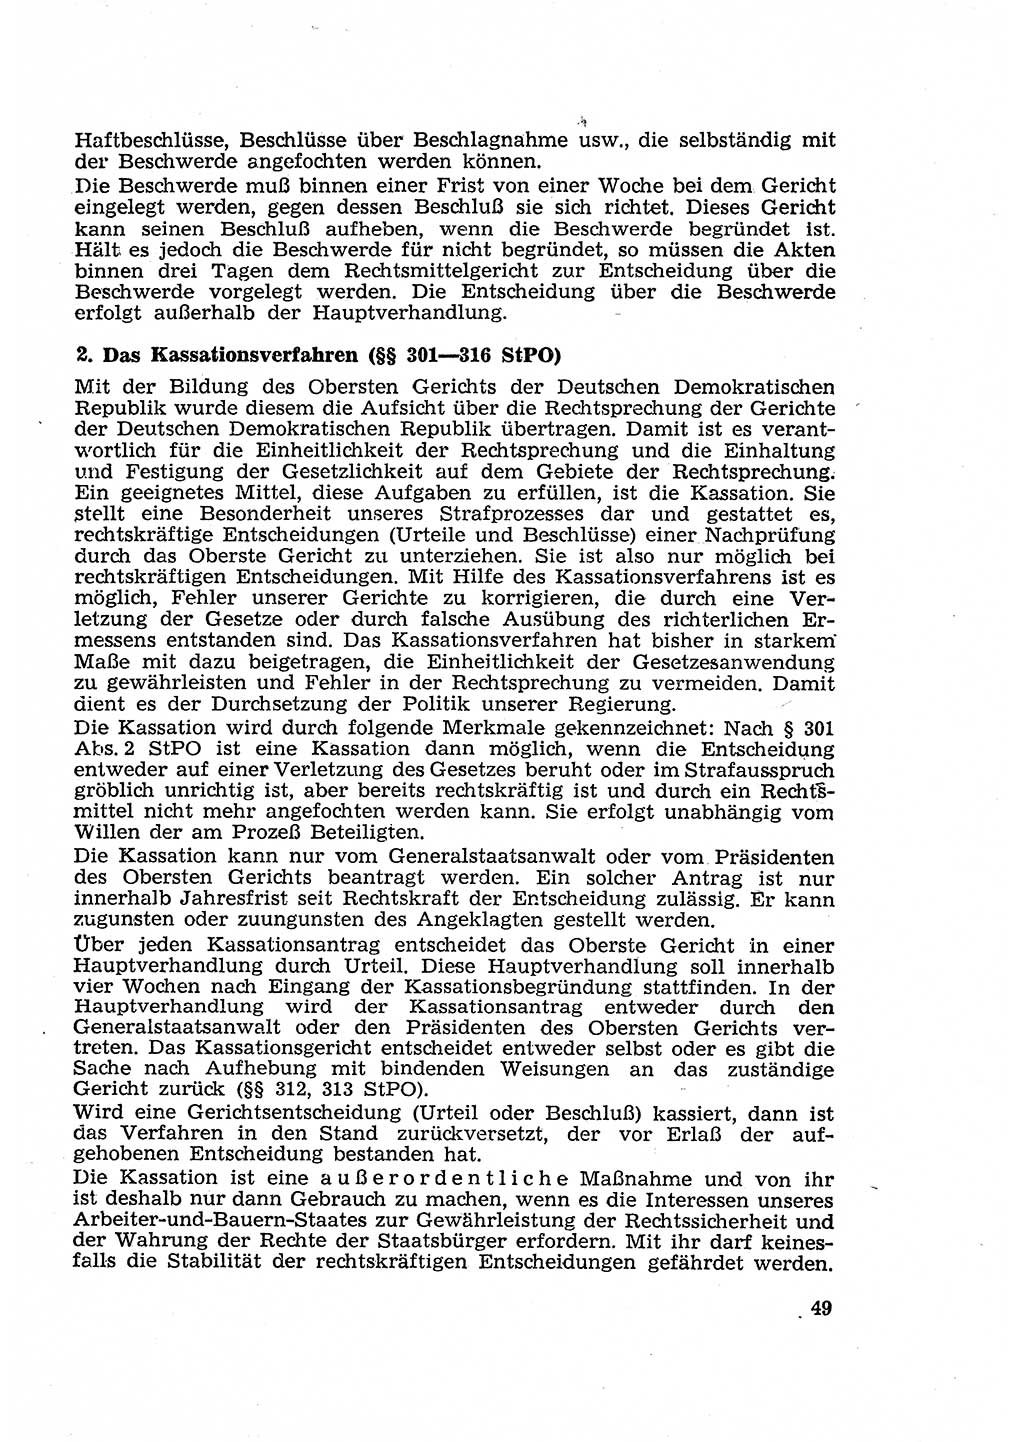 Strafverfahren in der Deutschen Demokratischen Republik (DDR) und seine demokratischen Prinzipien 1956, Seite 49 (Str.-Verf. DDR 1956, S. 49)